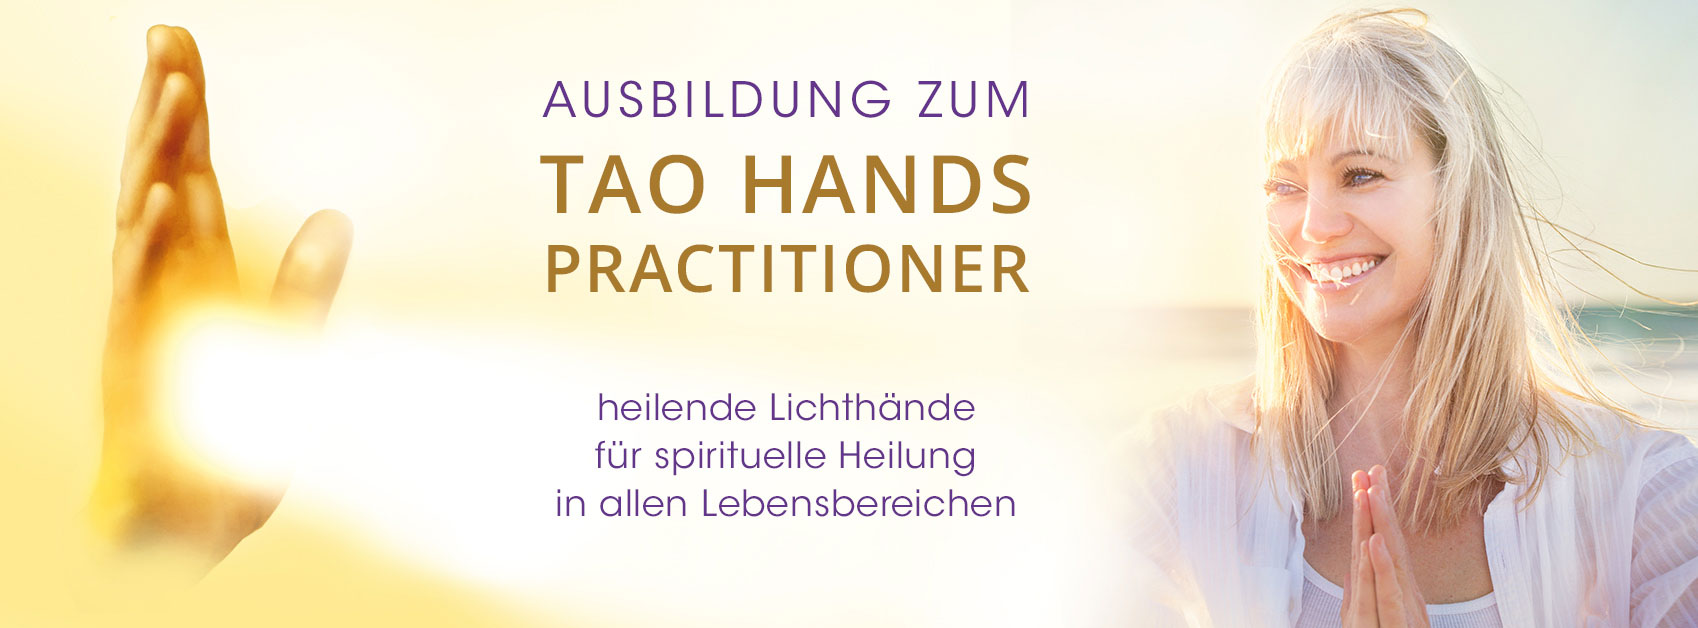 Tao Hands Practitioner Ausbildung